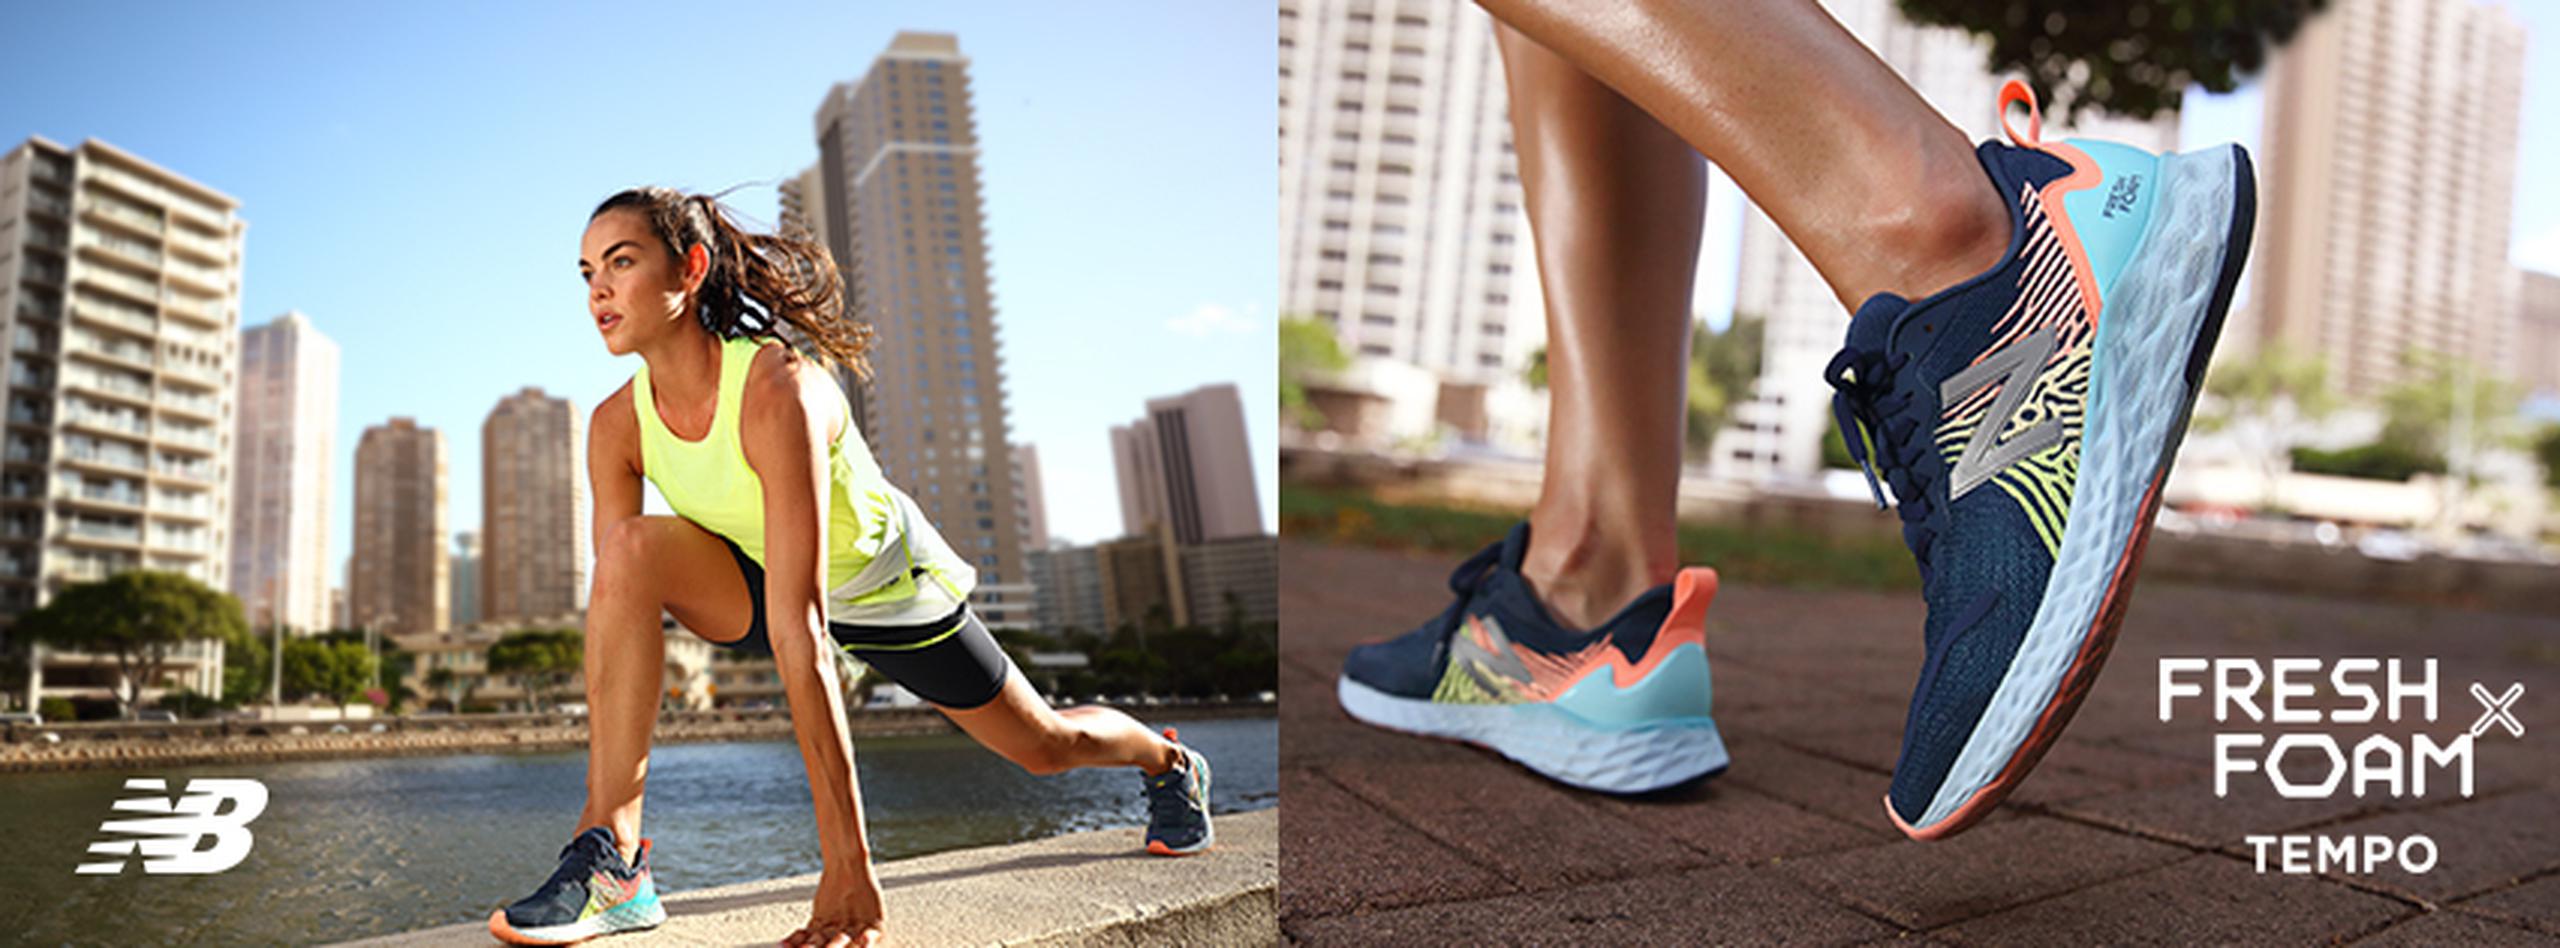 New Balance San Juan cuenta con variedad de estilos en calzado deportivo para ayudarte a lograr tus metas de bienestar.